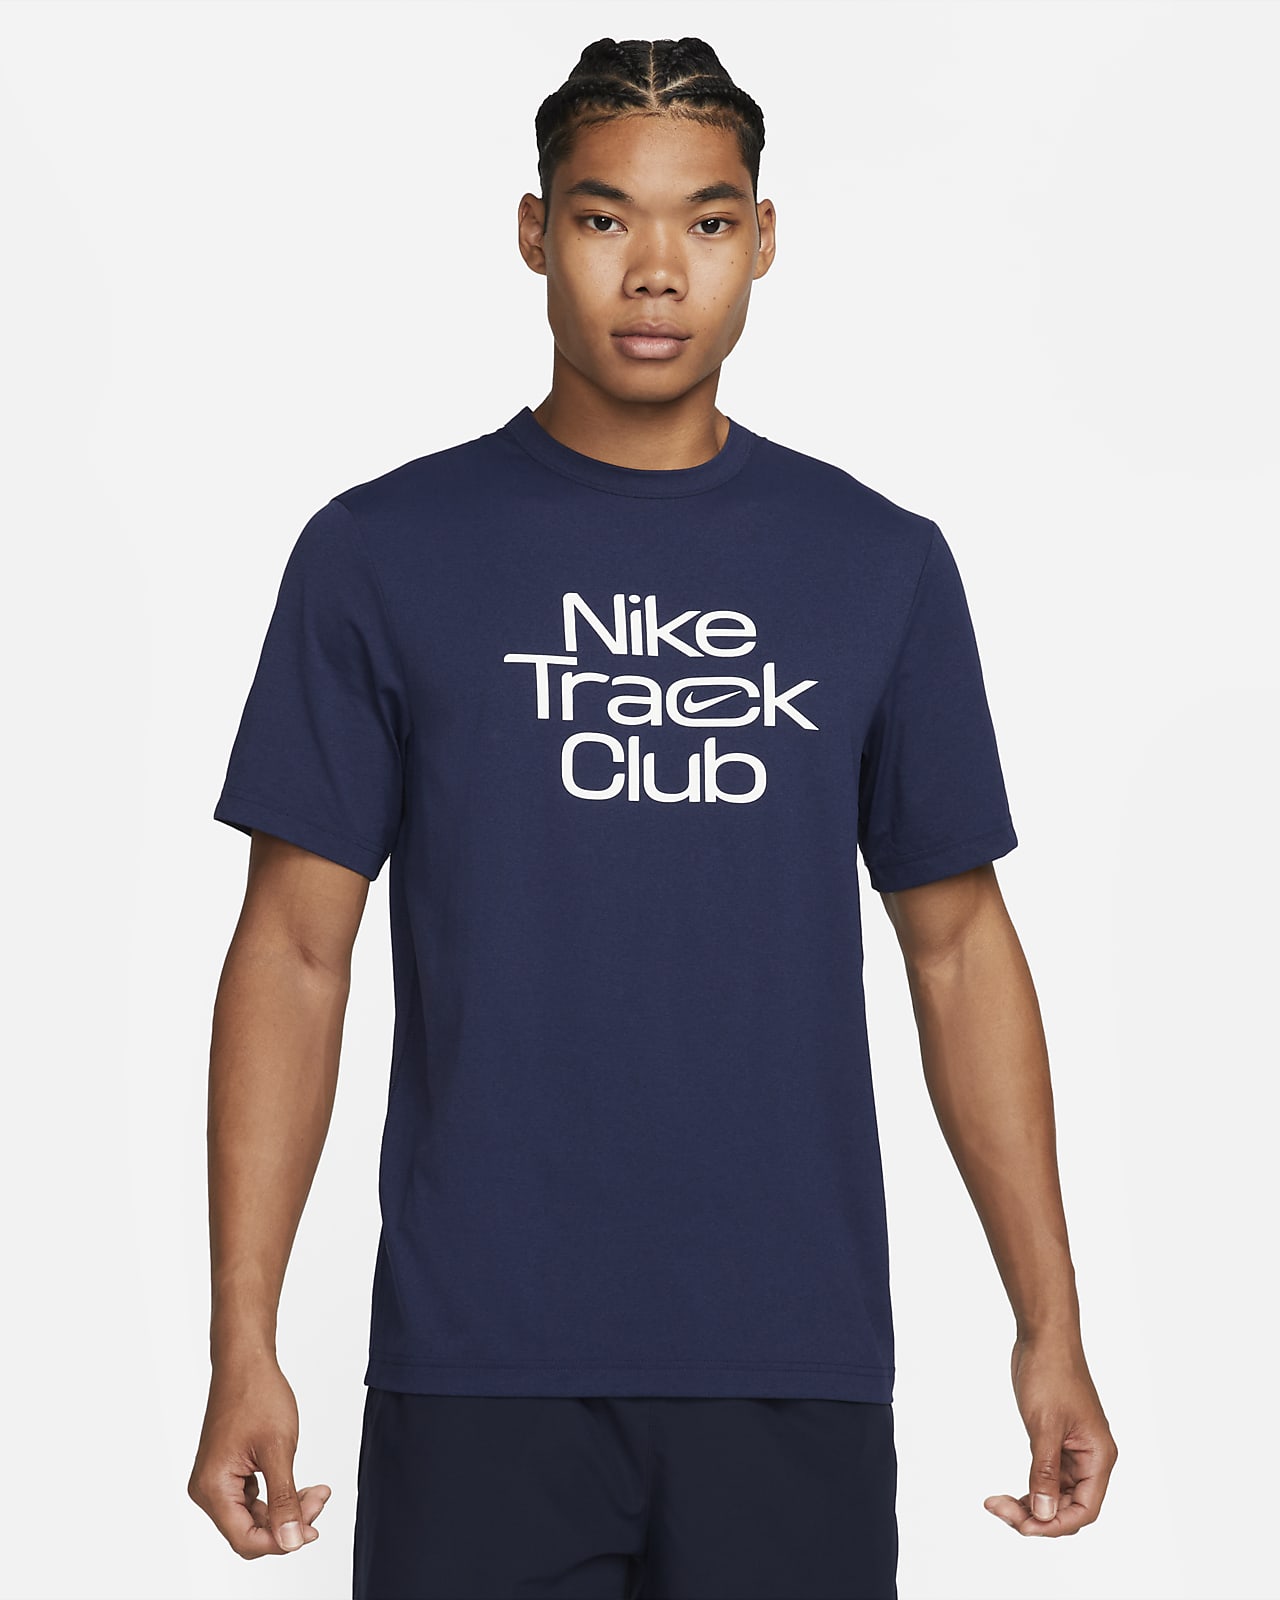 Ανδρική κοντομάνικη μπλούζα για τρέξιμο Dri-FIT Nike Track Club